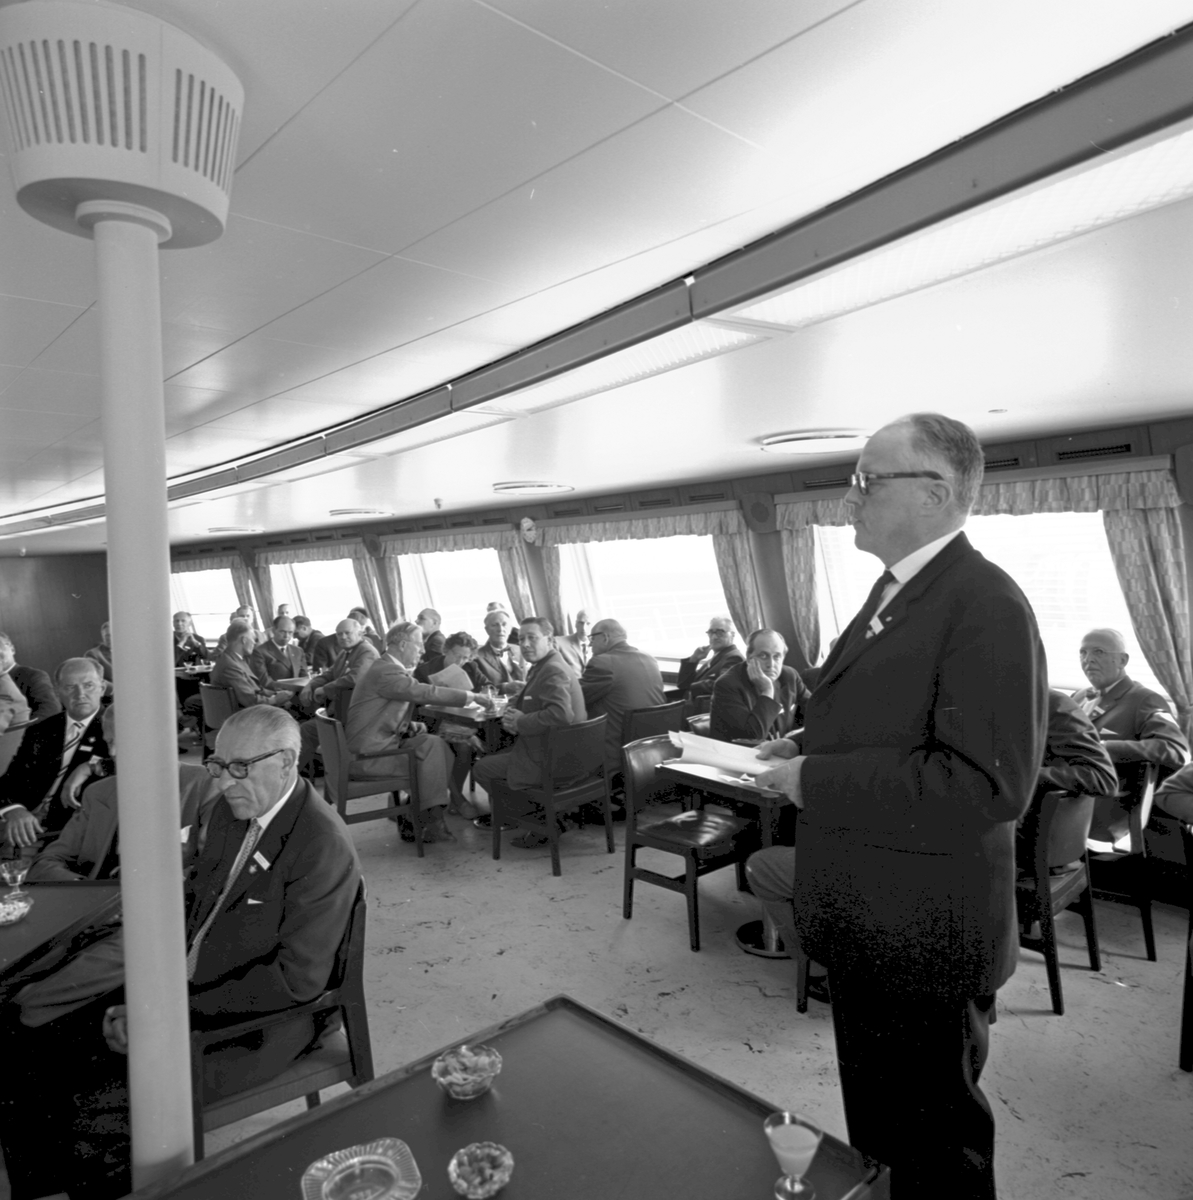 Ombord på tågfärjan M/S Trelleborg. Distriktschef Wilhelm Scherman håller tal.
SLTF, Svenska lokaltrafik föreningen, årsmöte i Falsterbo